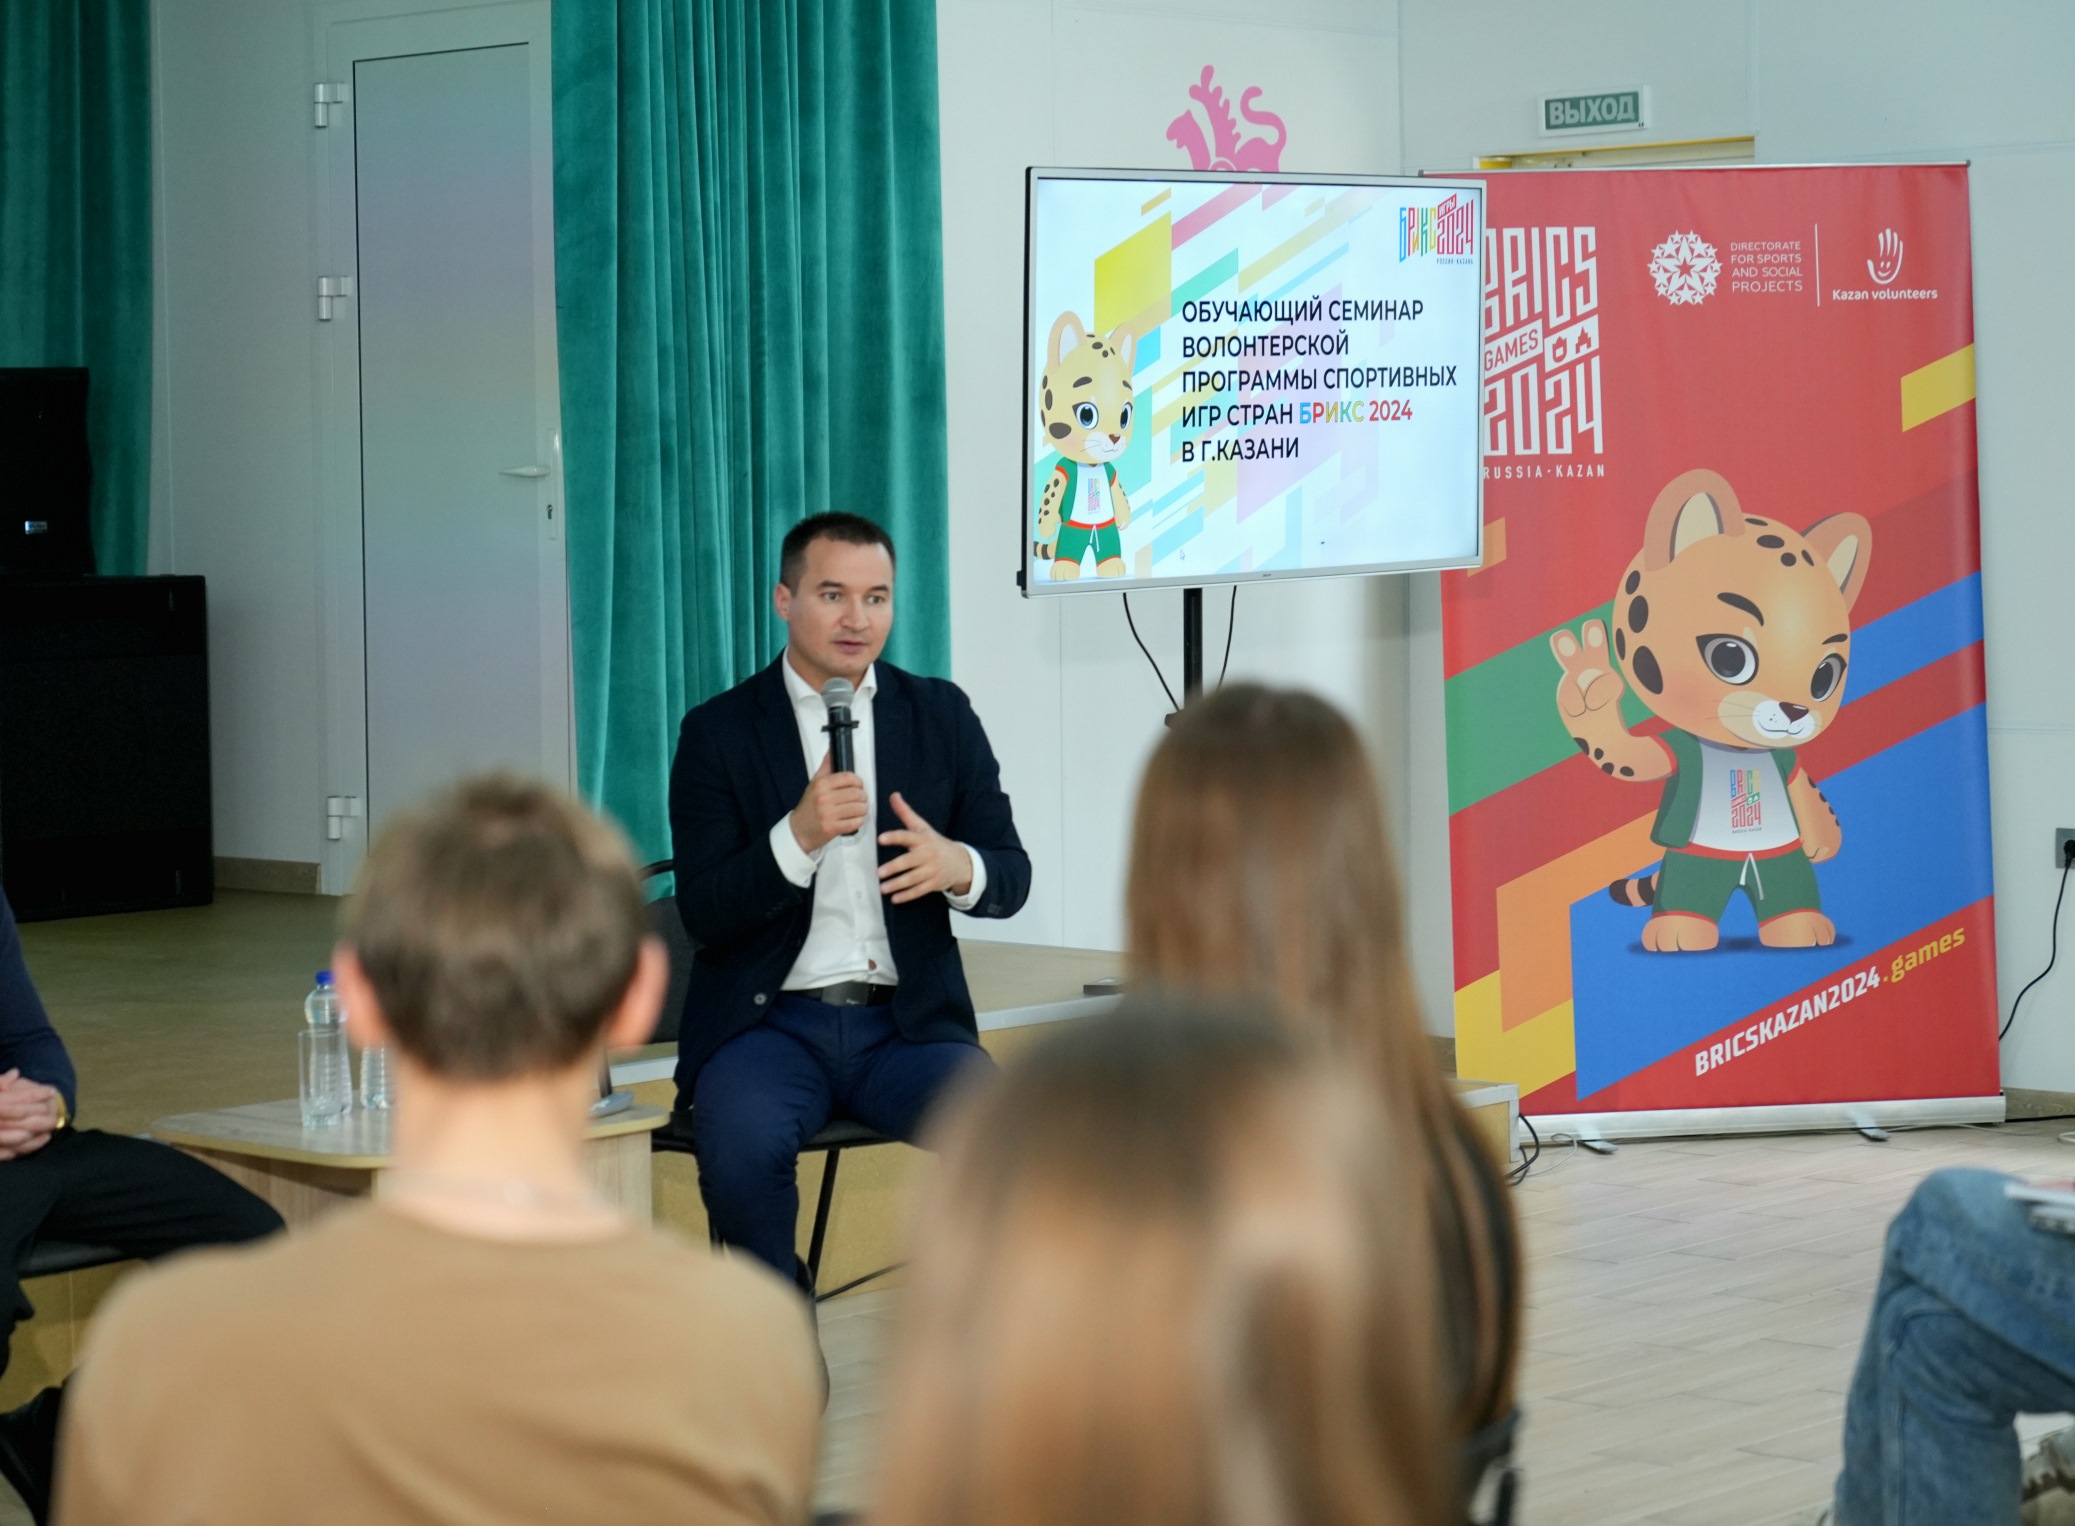 В Казани проходит обучающий семинар волонтерской программы Игр БРИКС 2024